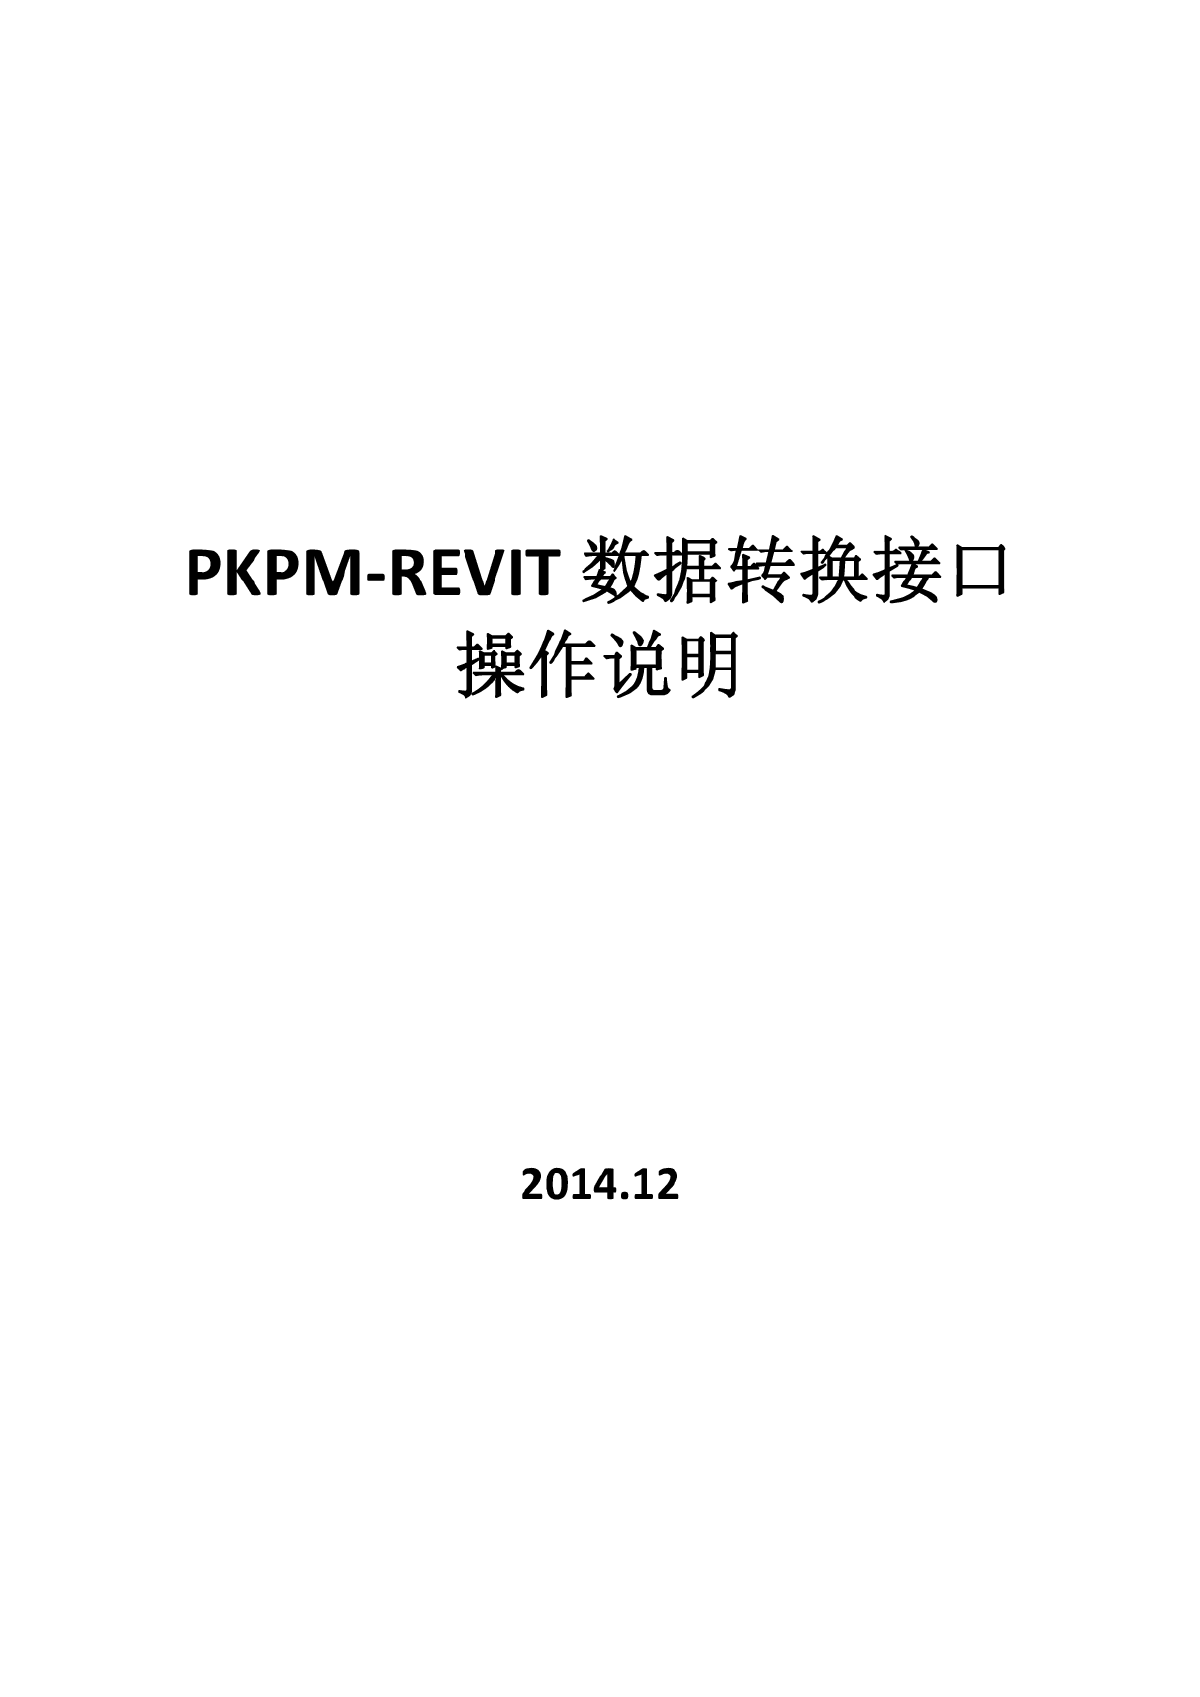 PKPM转Revit软件使用说明书-图一